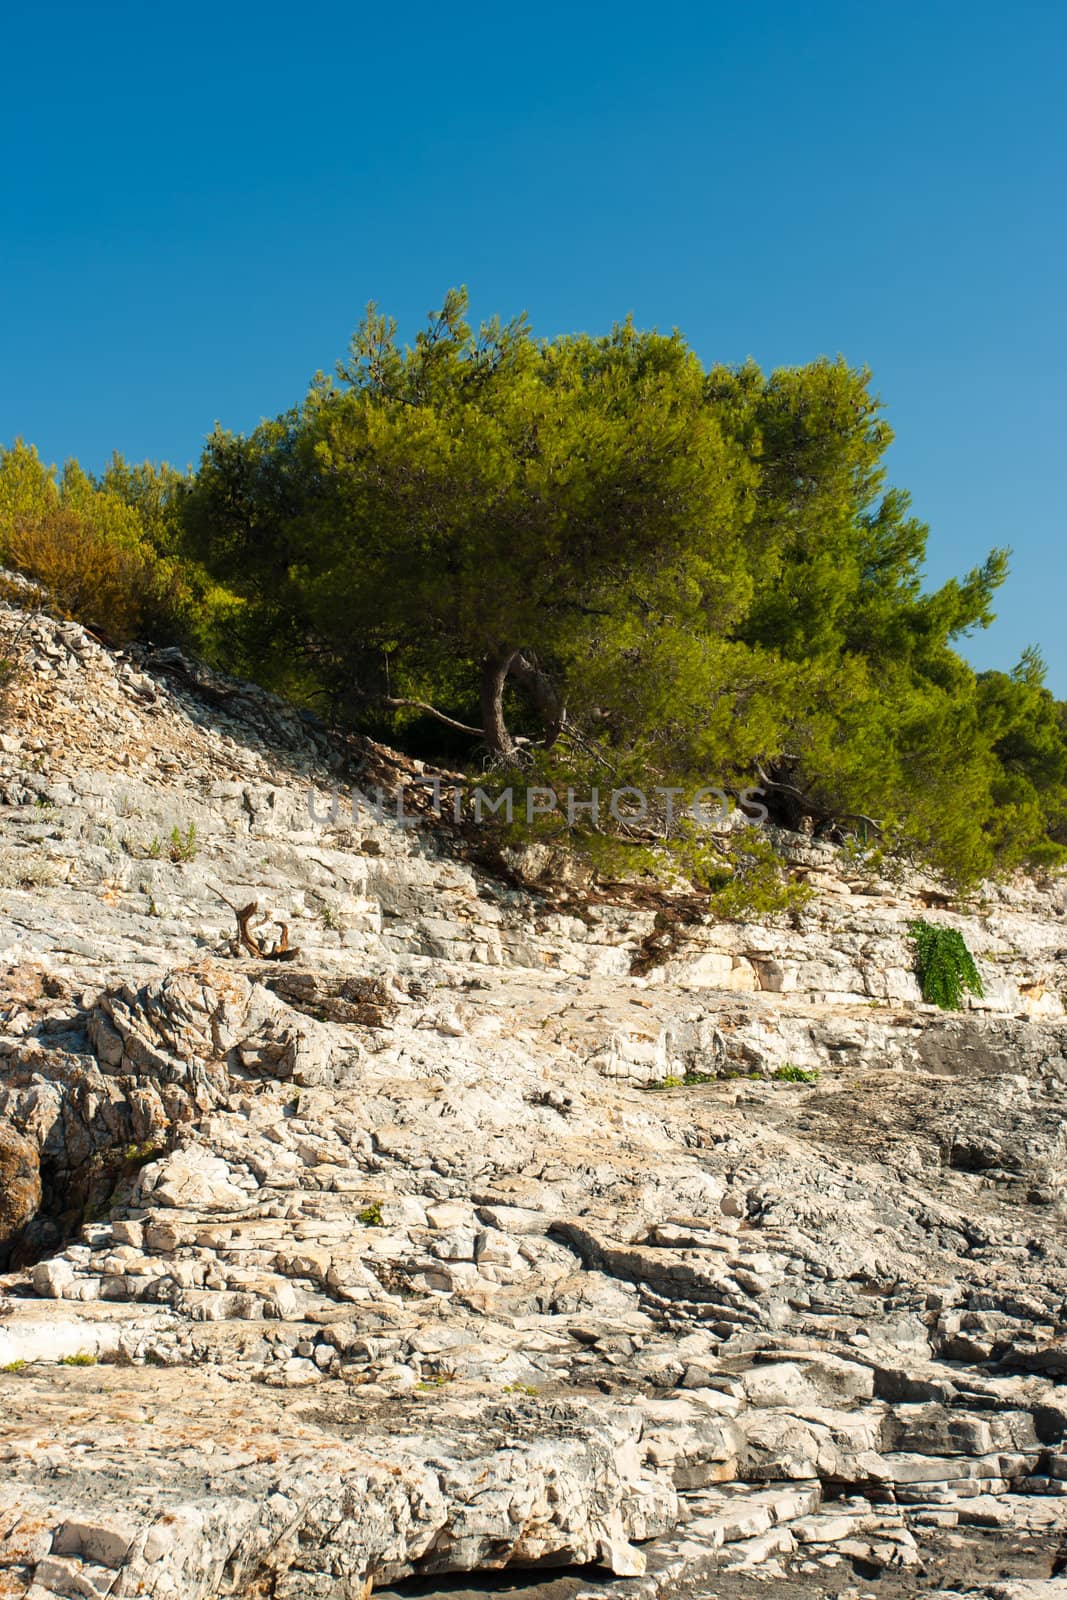 rocky scrubby landscape from vis island (croatia)